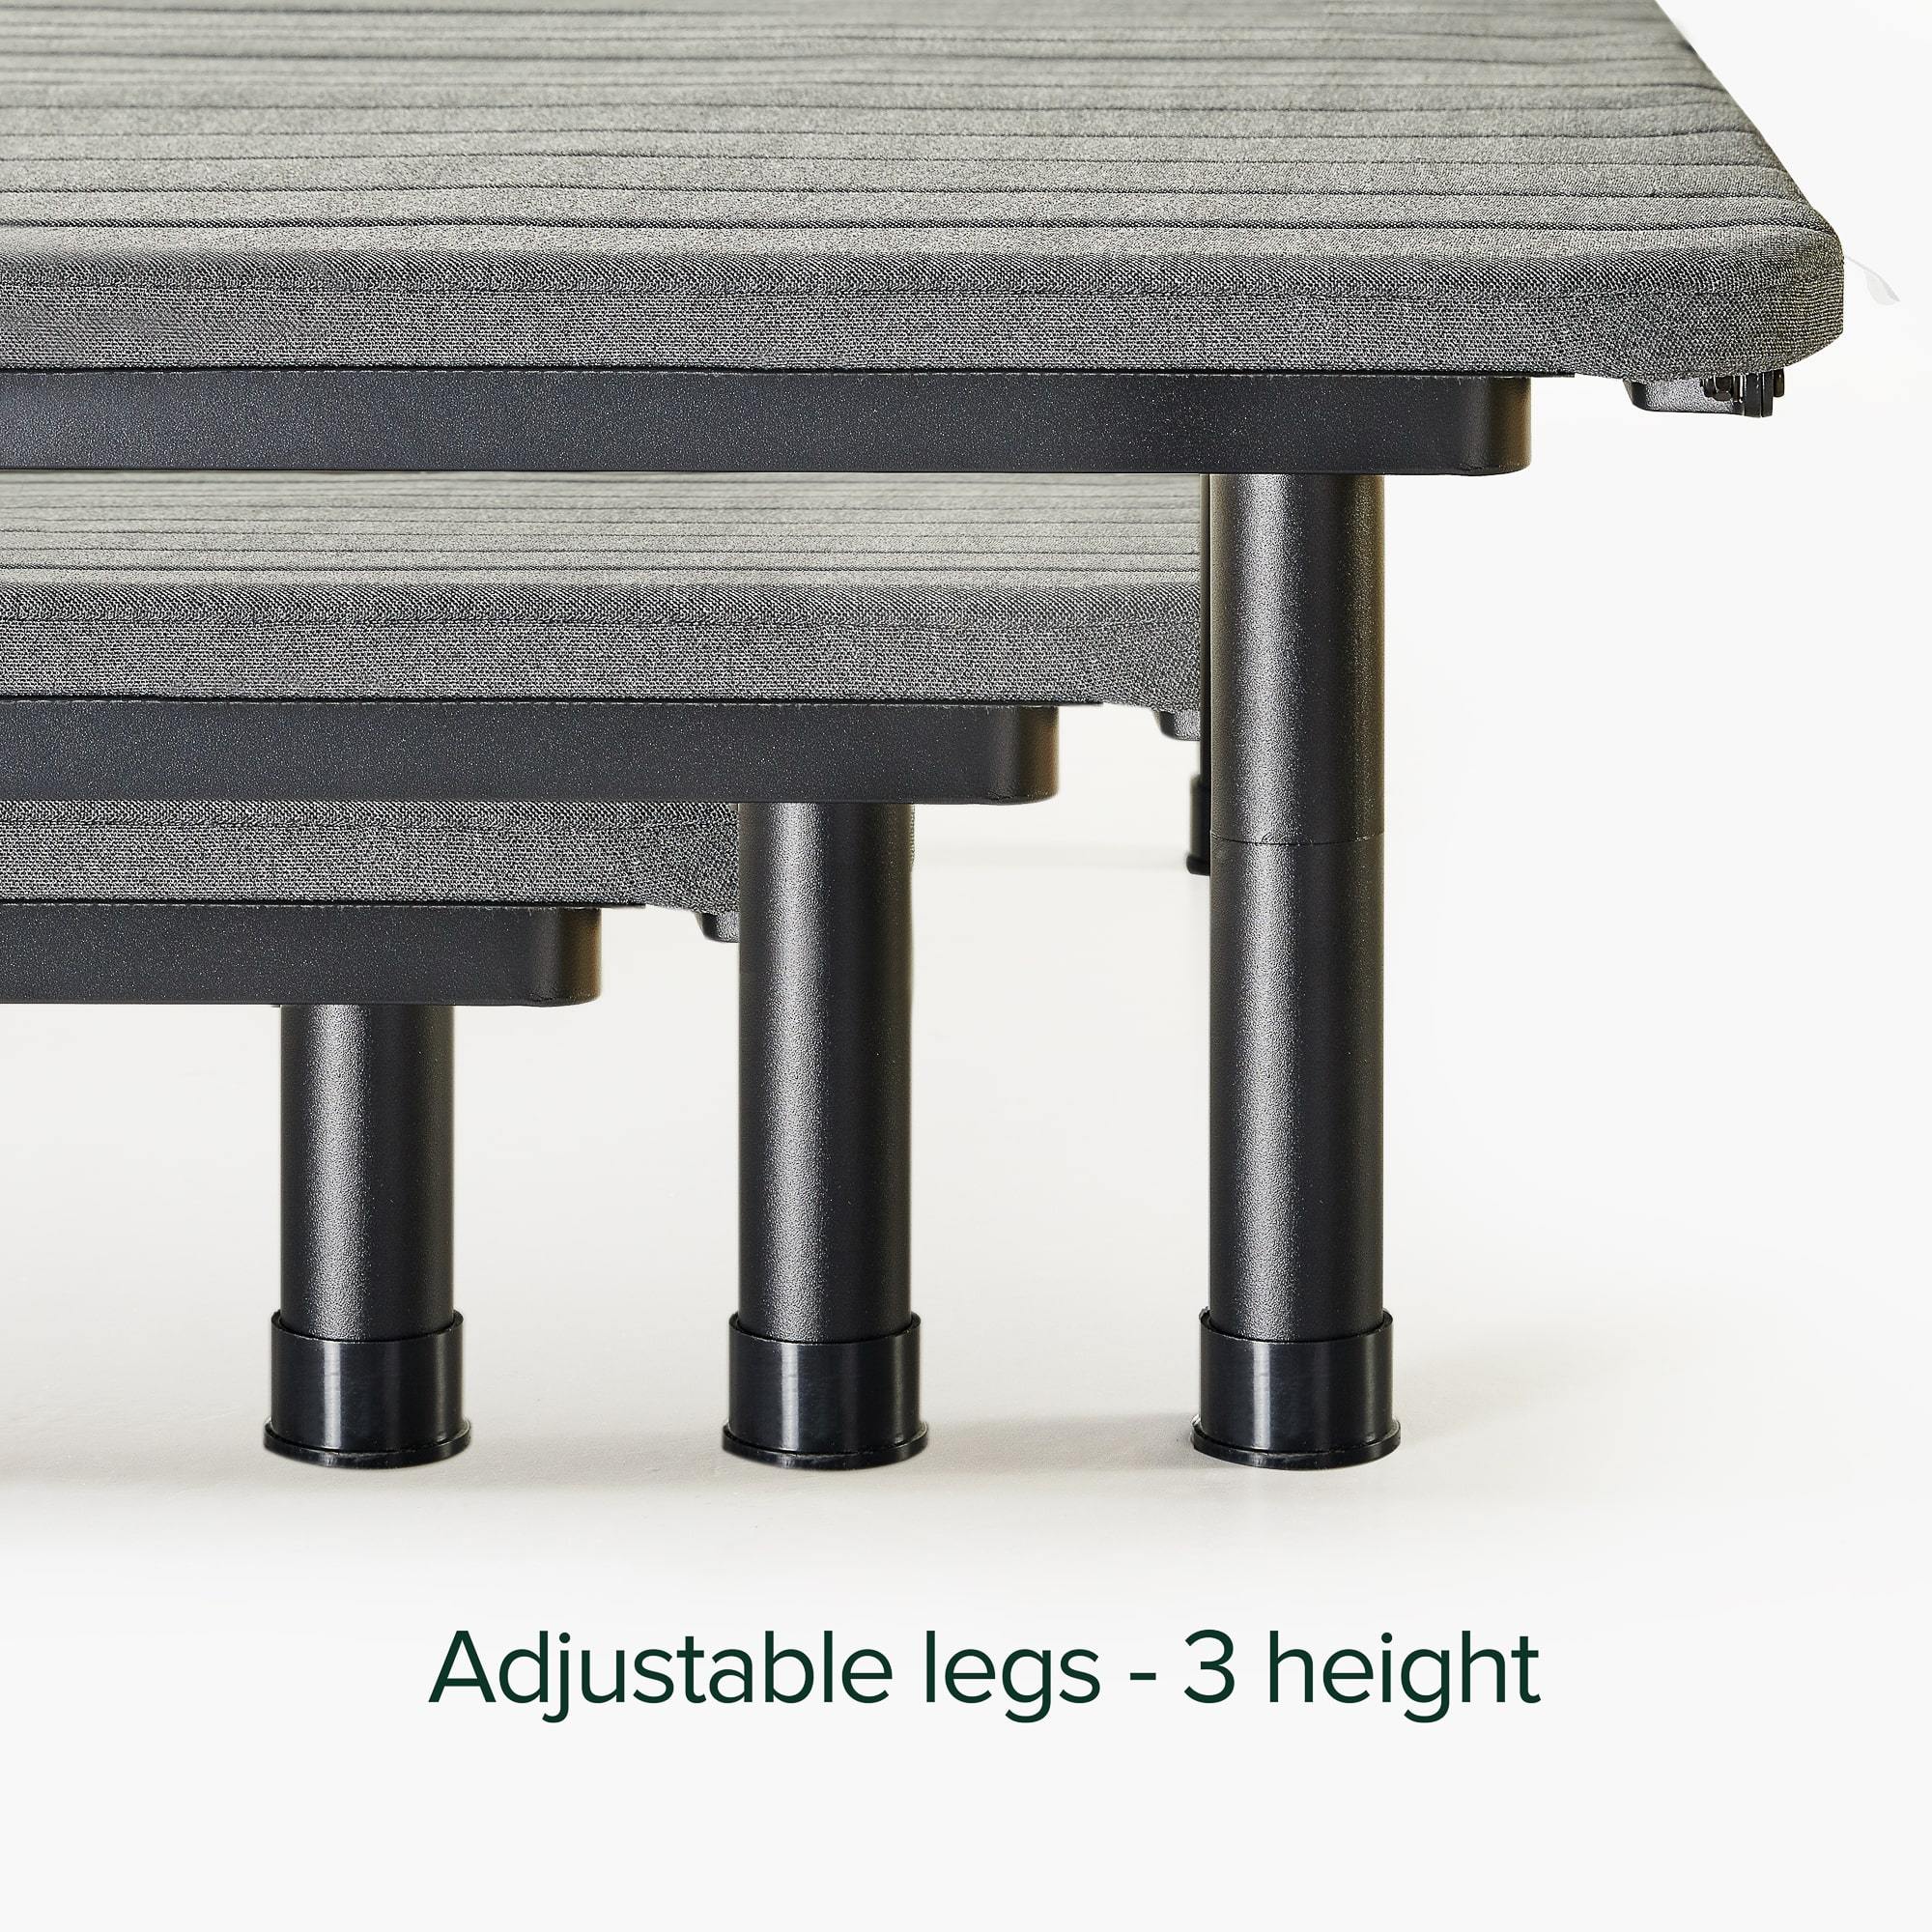 Jared Upholstered Adjustable Bed Frame with Customizable Leg Height adjustable leg height